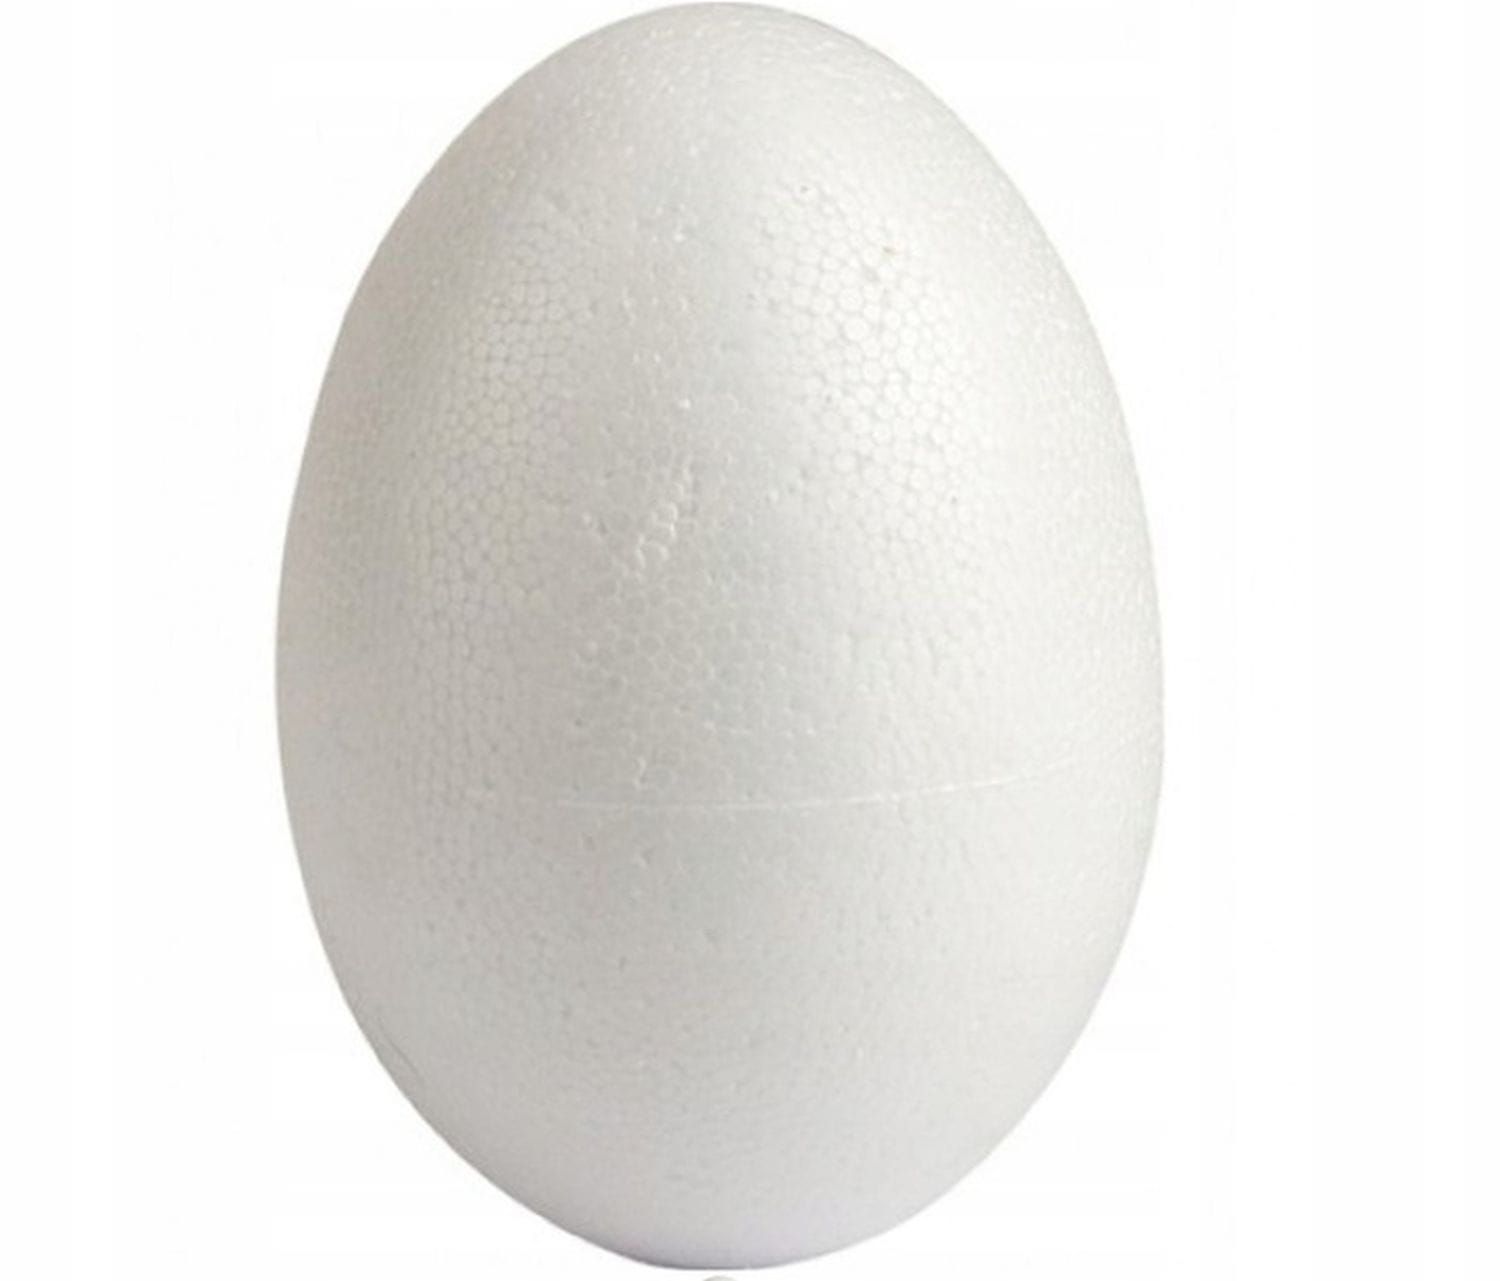 Jajko styropianowe dwie połówki 16 cm